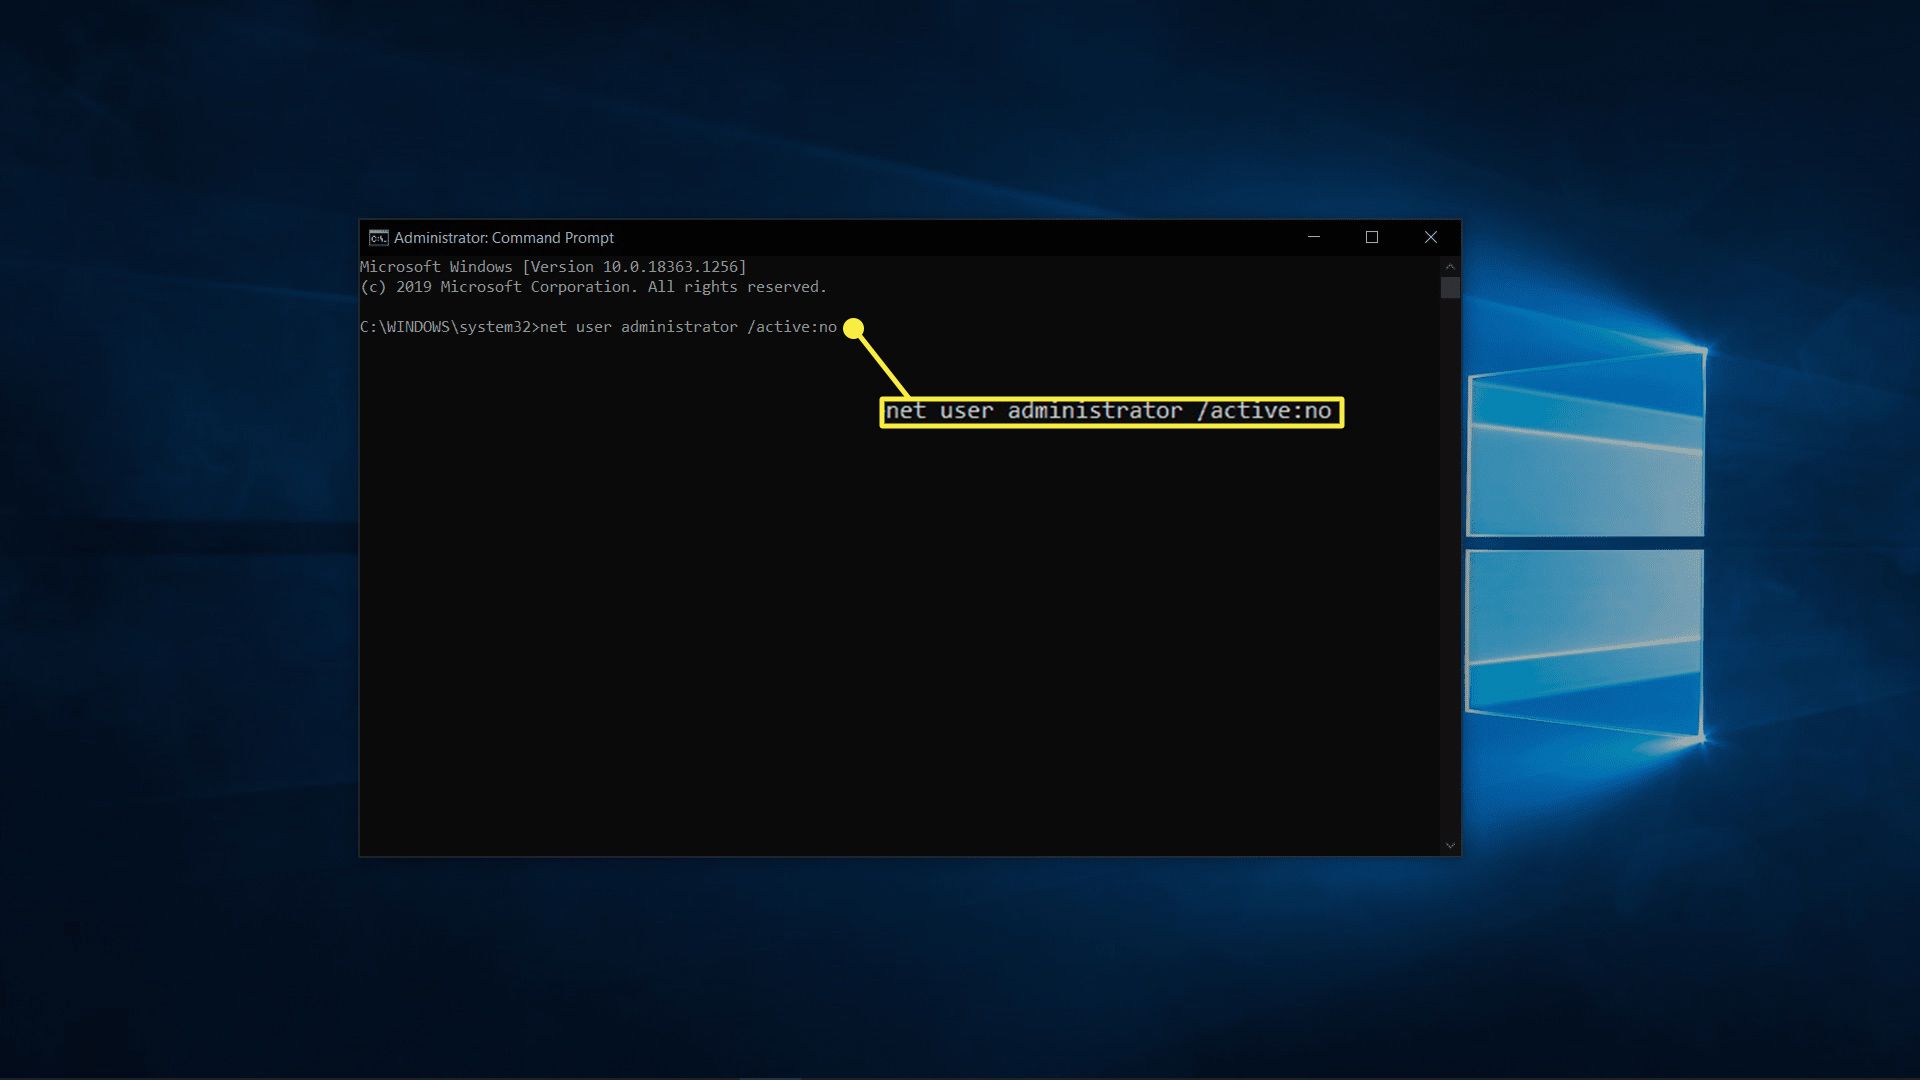 Het beheerdersaccount uitschakelen in Windows 10.